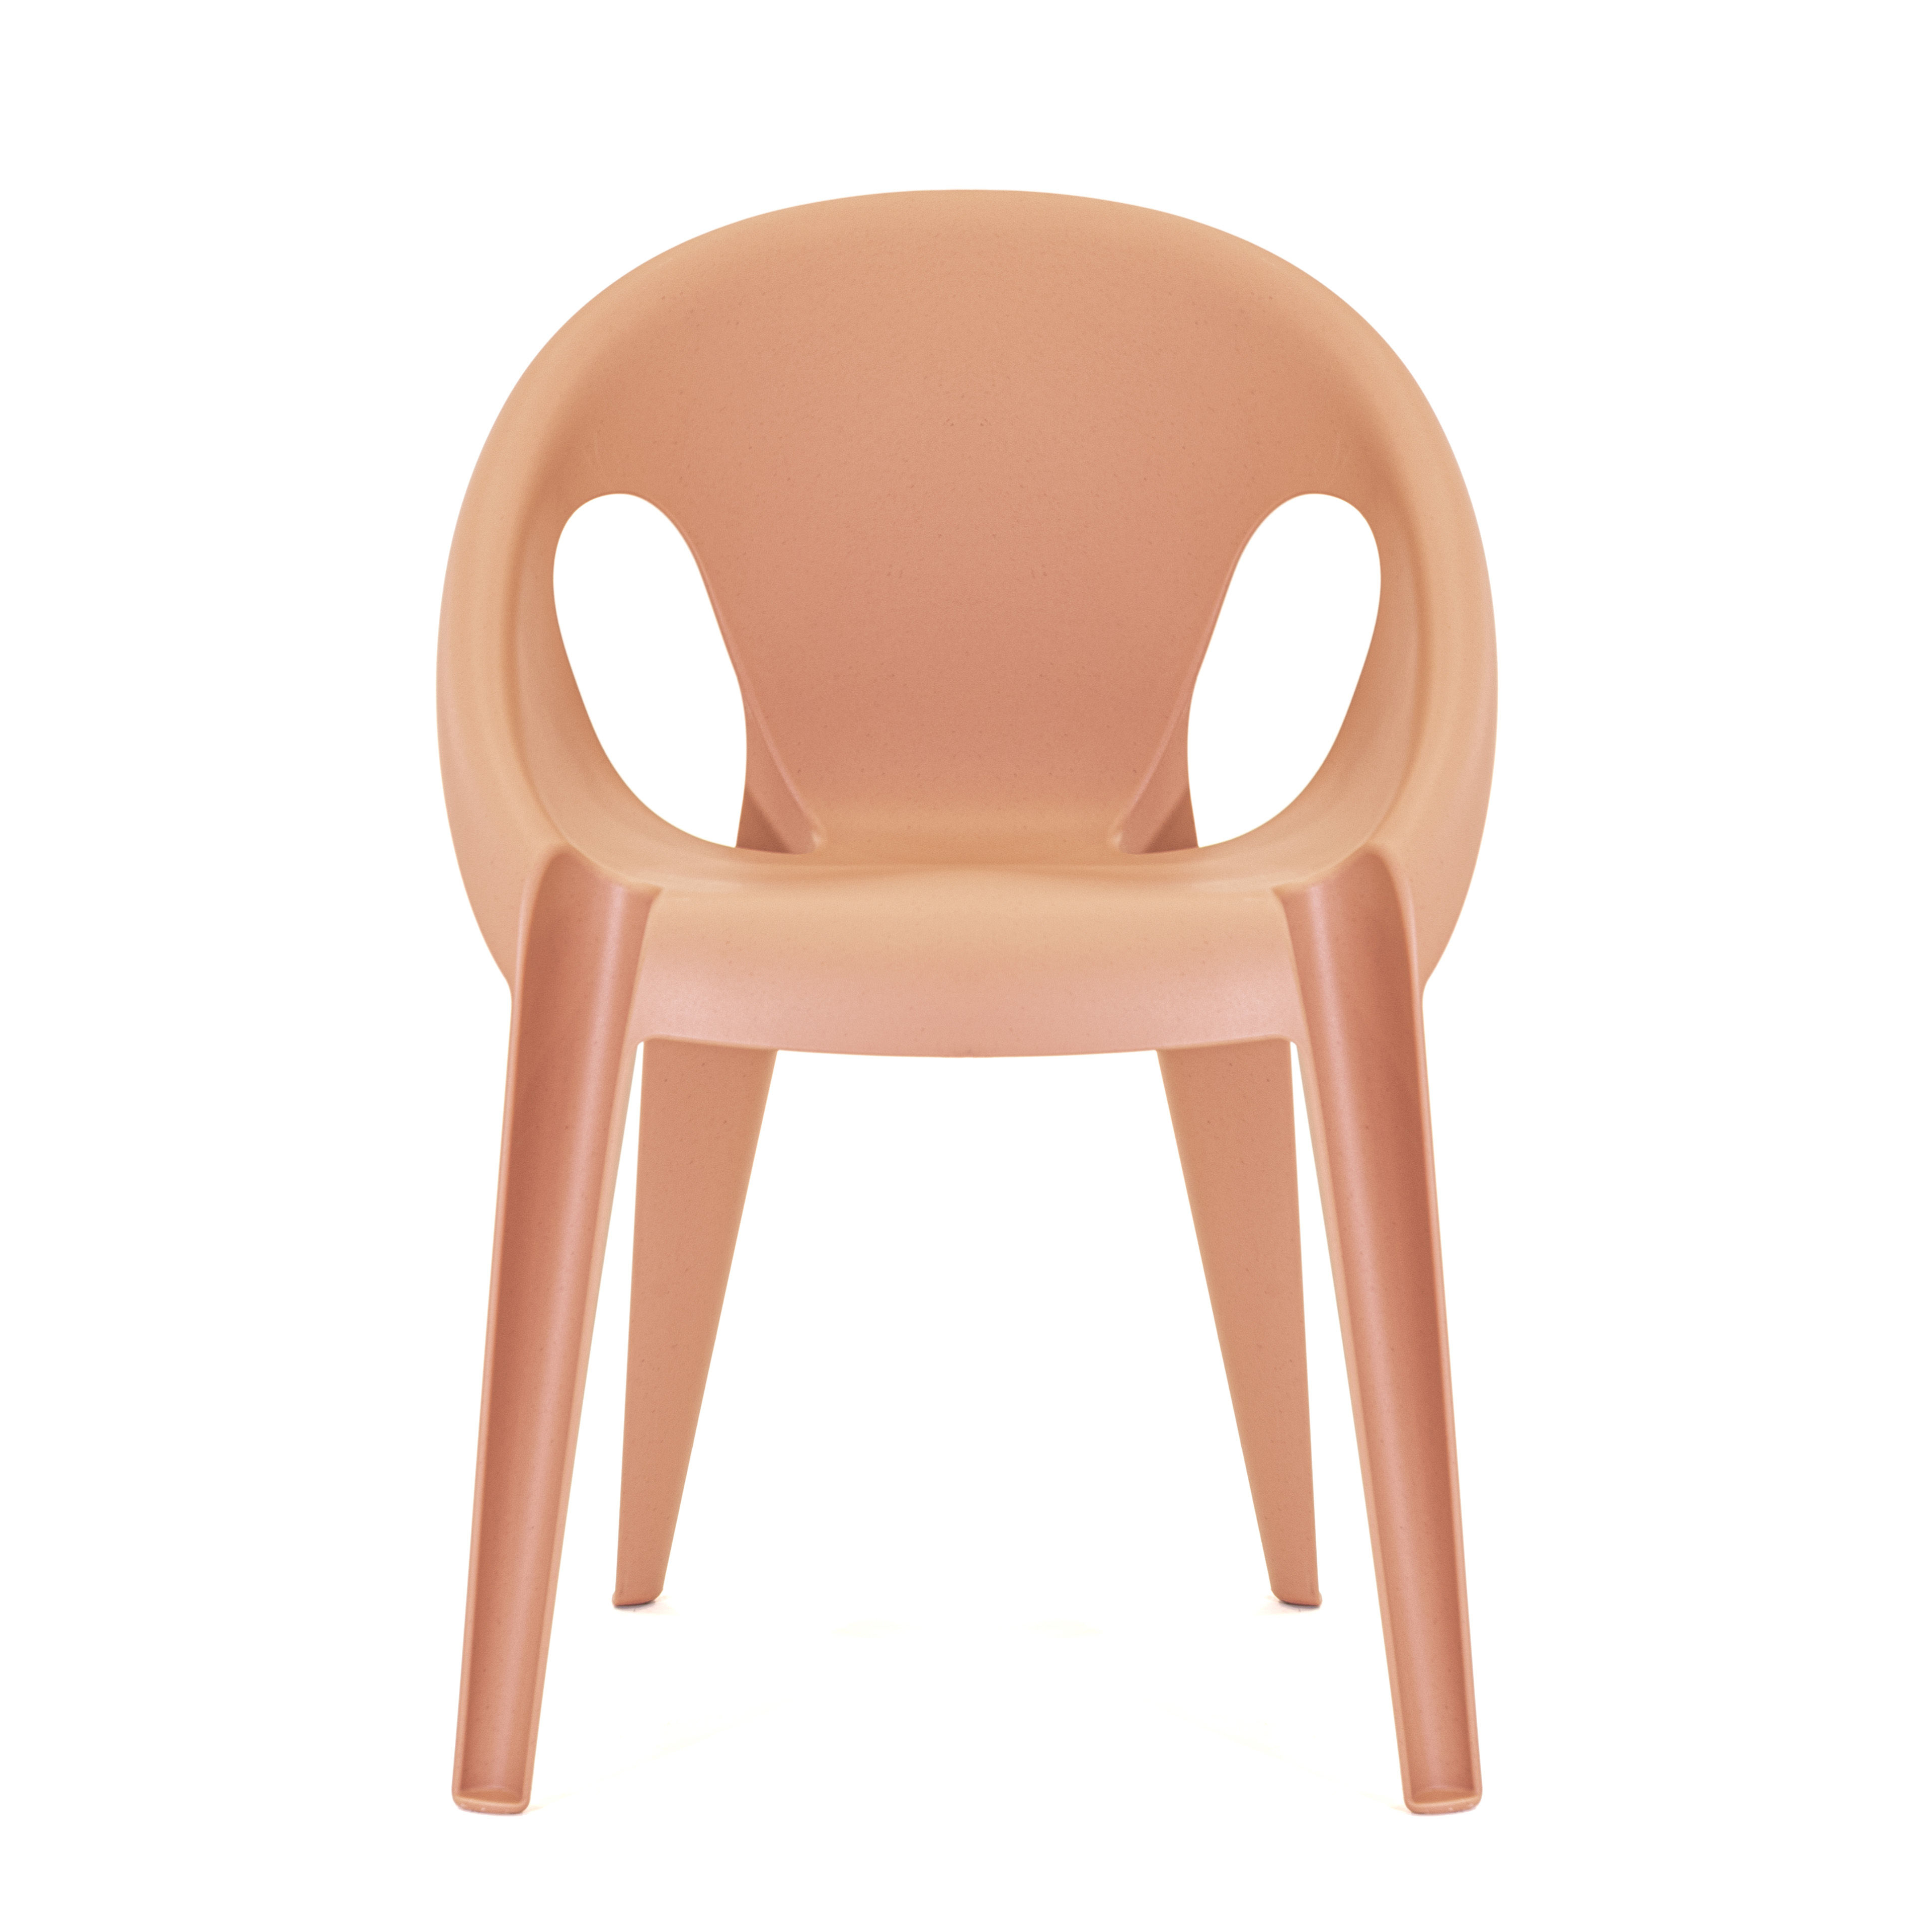 Mobilier - Chaises, fauteuils de salle à manger - Fauteuil empilable Bell / By Konstantin Grcic / Polypropylène recyclé - Eco-conçu - Magis - Orange Sunrise - Polypropylène recyclé